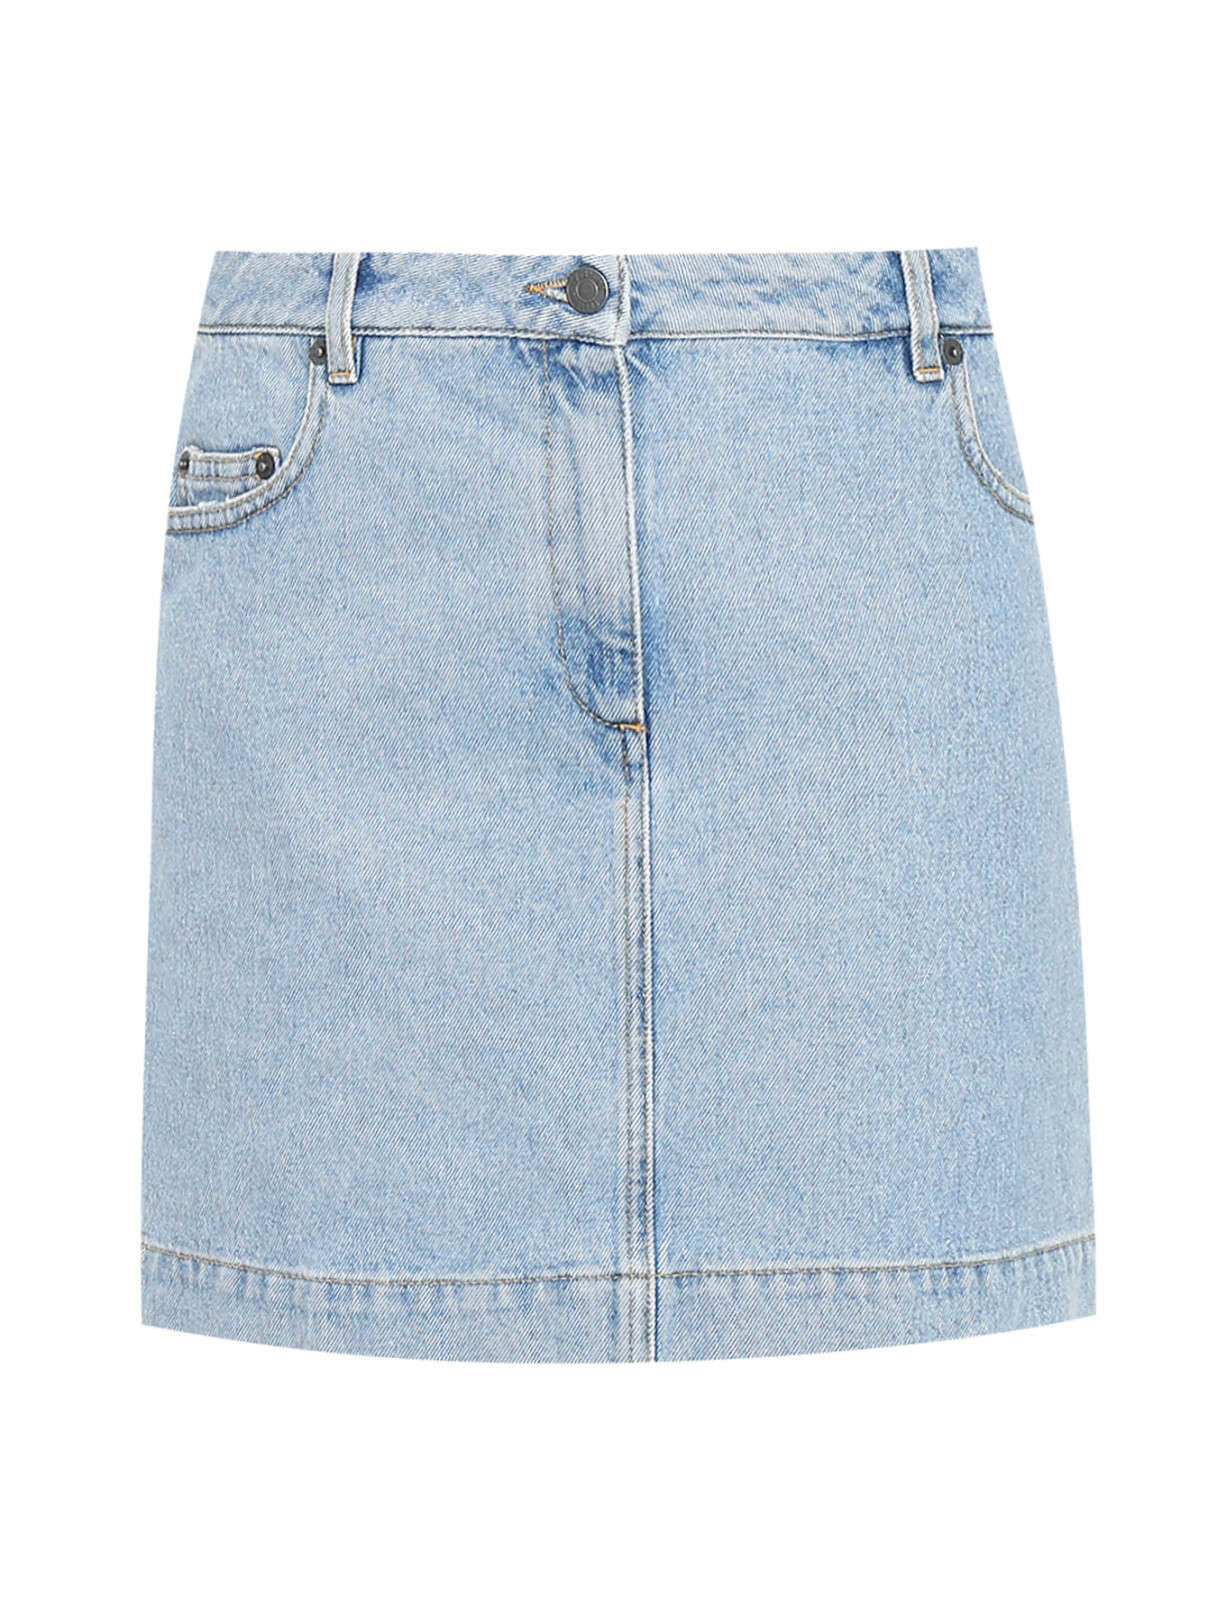 Джинсовая юбка из хлопка Moschino  –  Общий вид  – Цвет:  Синий